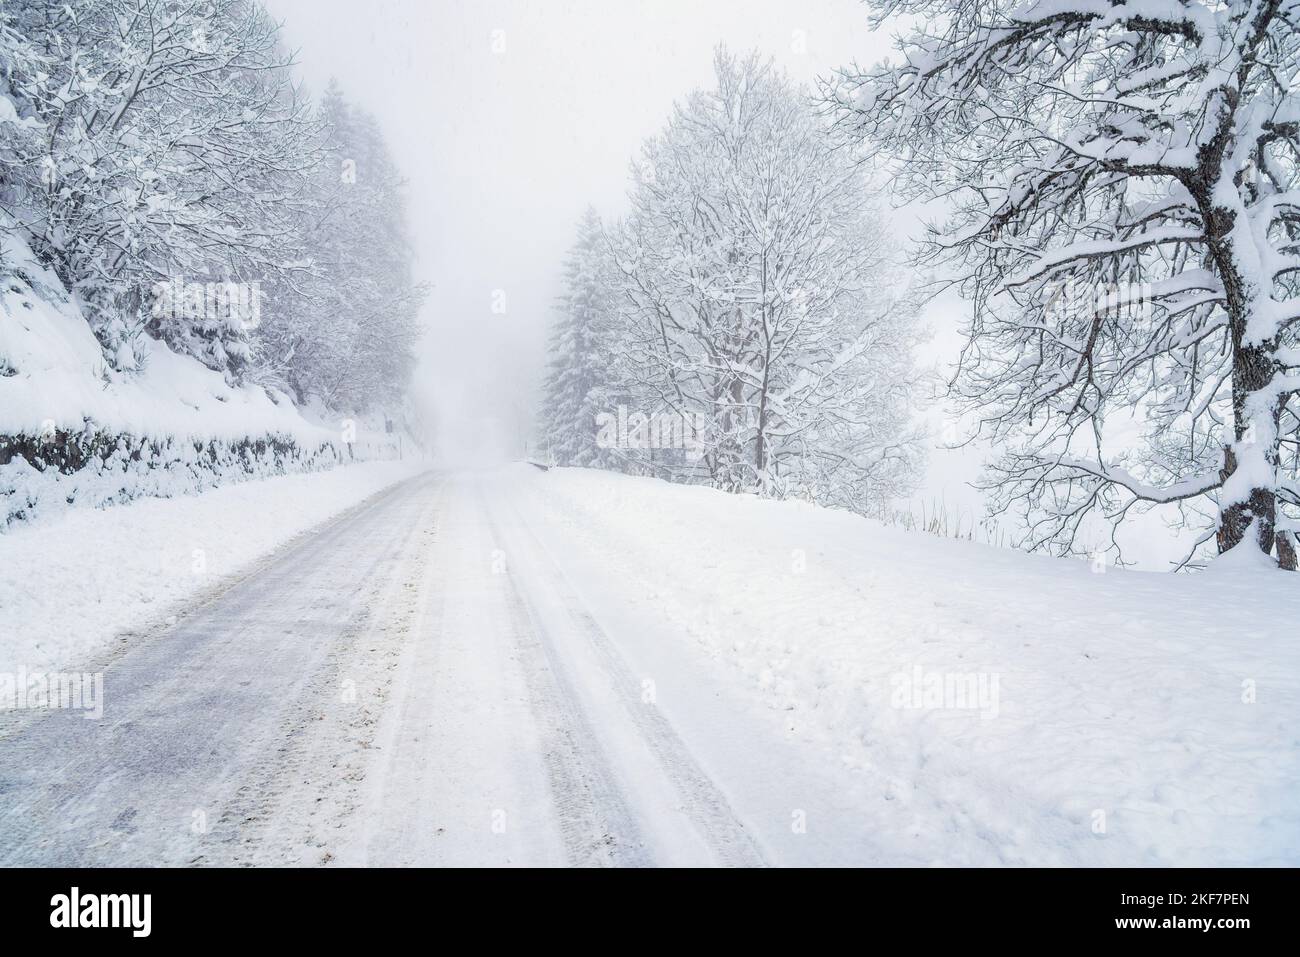 Mauvaise visibilité le long d'une route de montagne enneigée pendant une tempête de neige hivernale. Conditions de conduite dangereuses. Banque D'Images